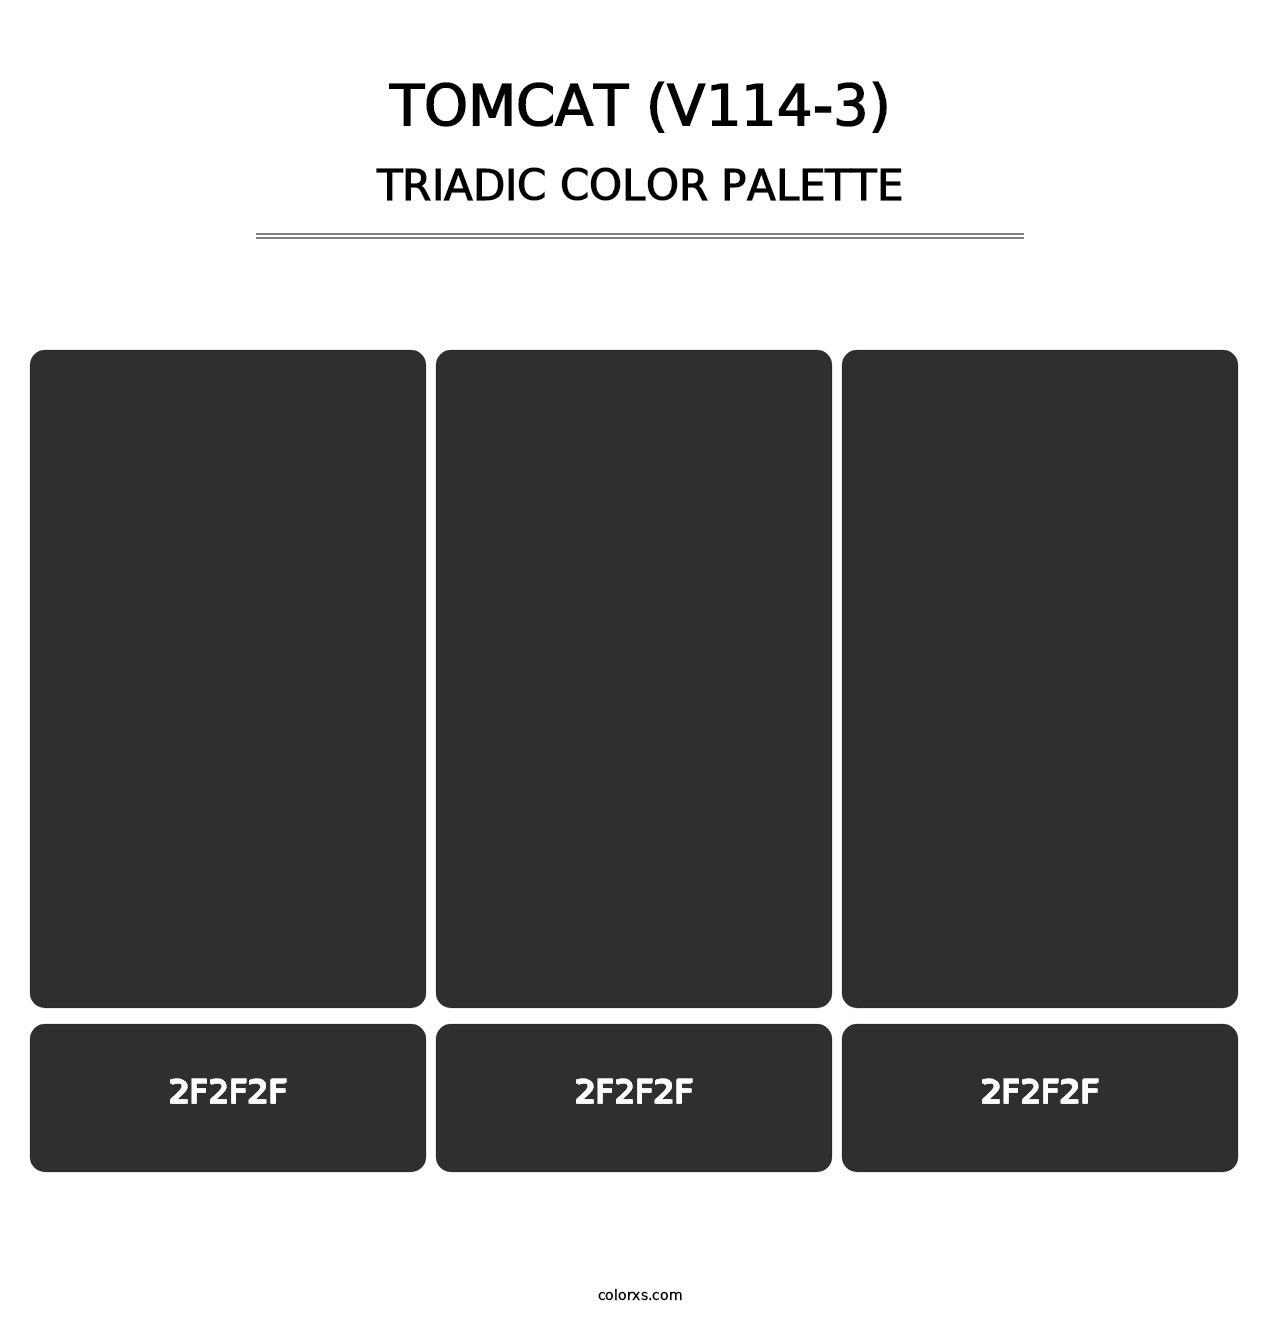 Tomcat (V114-3) - Triadic Color Palette